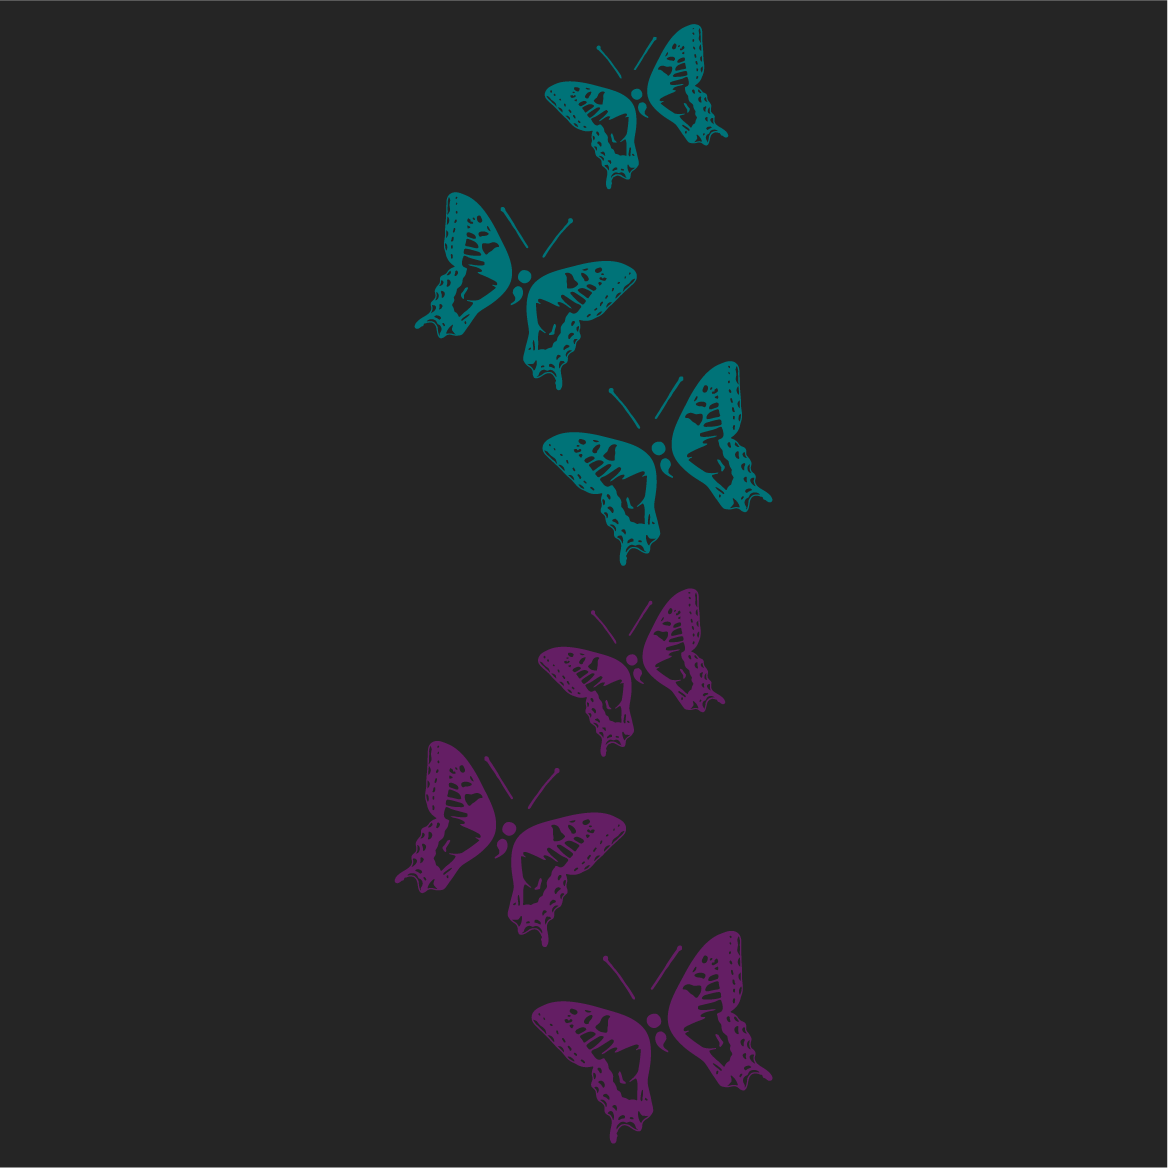 Mariposas for Morgynne shirt design - zoomed